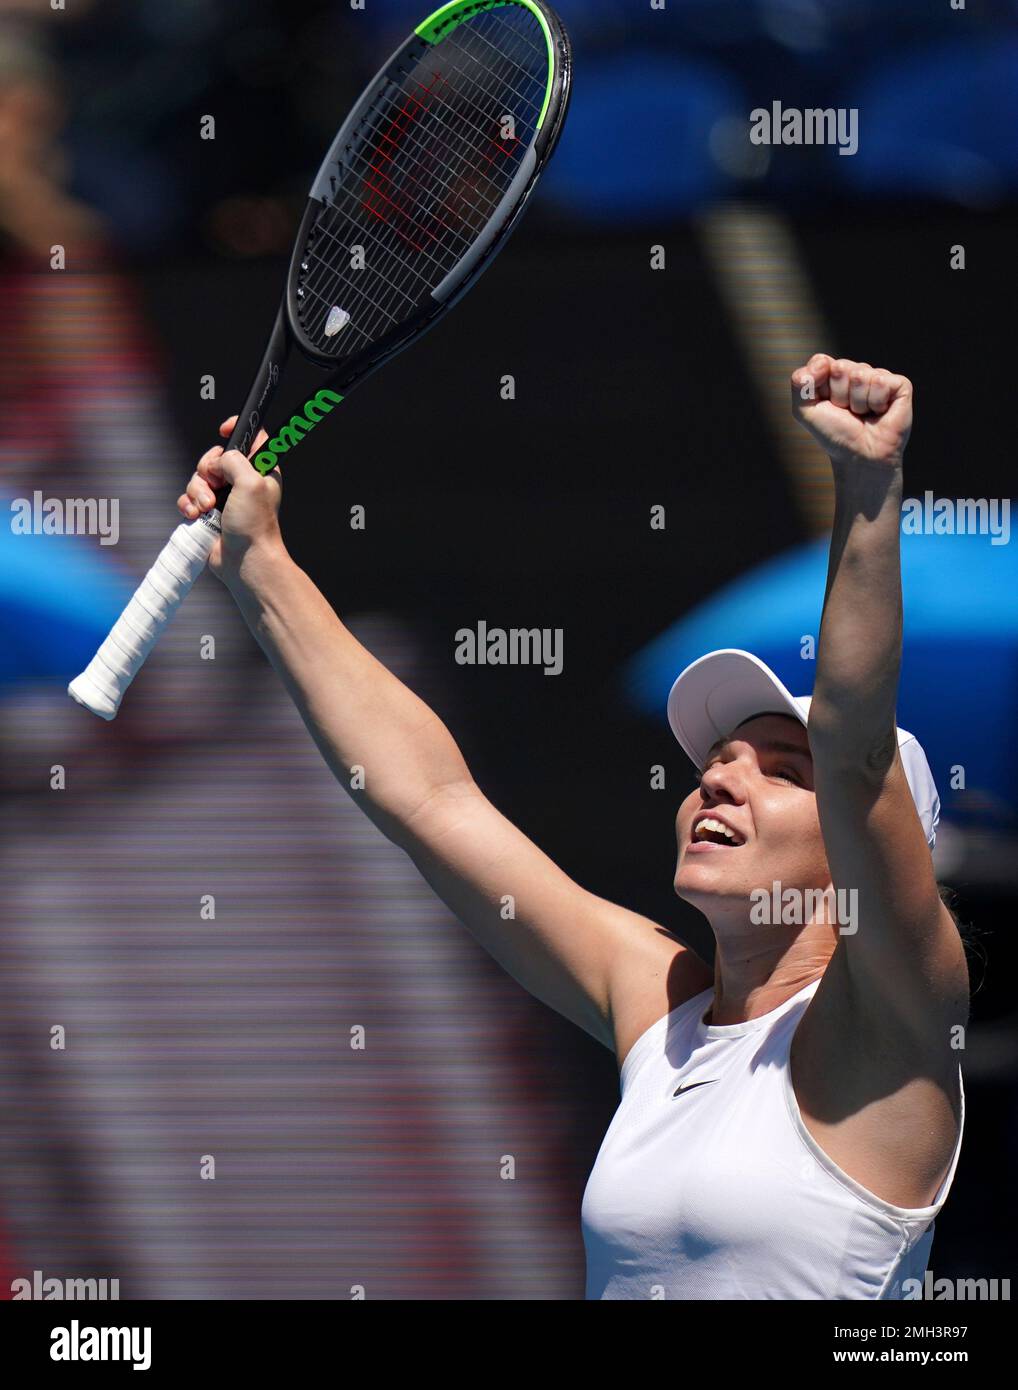 Romanias Simona Halep celebrates after defeating Estonias Anett Kontaveit during their quarterfinal match at the Australian Open tennis championship in Melbourne, Australia, Wednesday, Jan